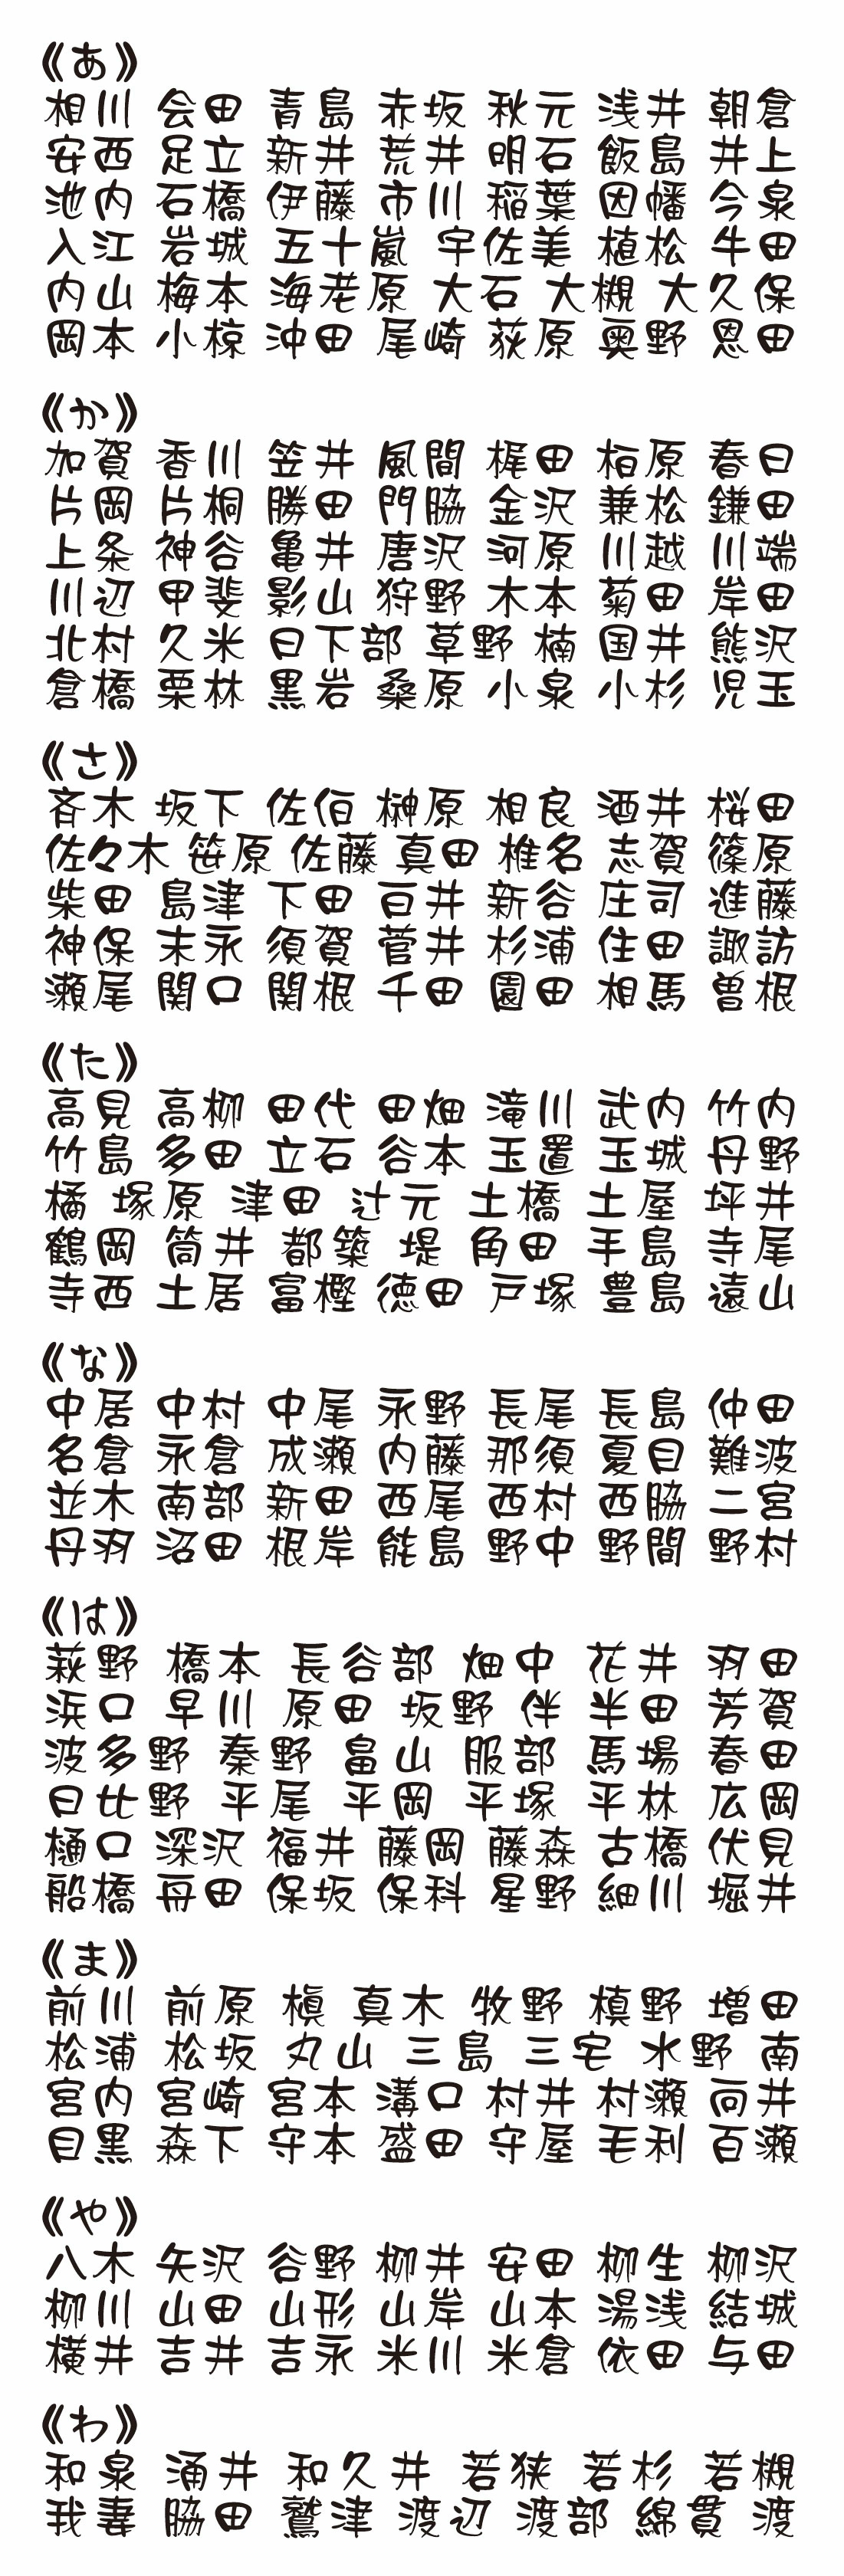 表札 書体 おすすめ 人気 漢字 表和10